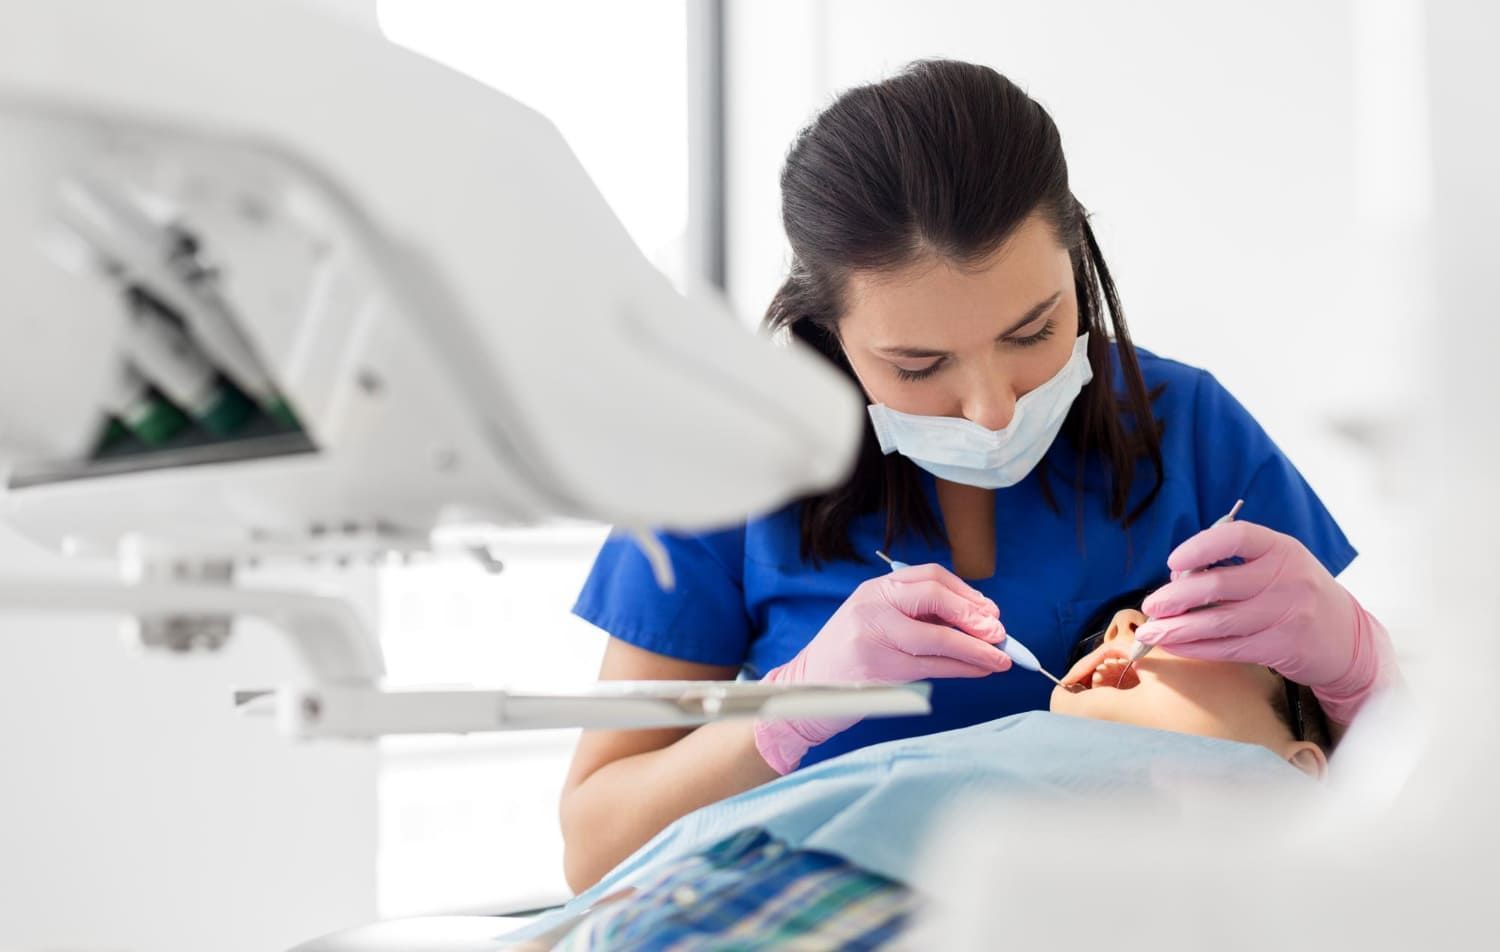 Mulher dentista atendendo um paciente no consultório; profissões que têm os maiores salários iniciais